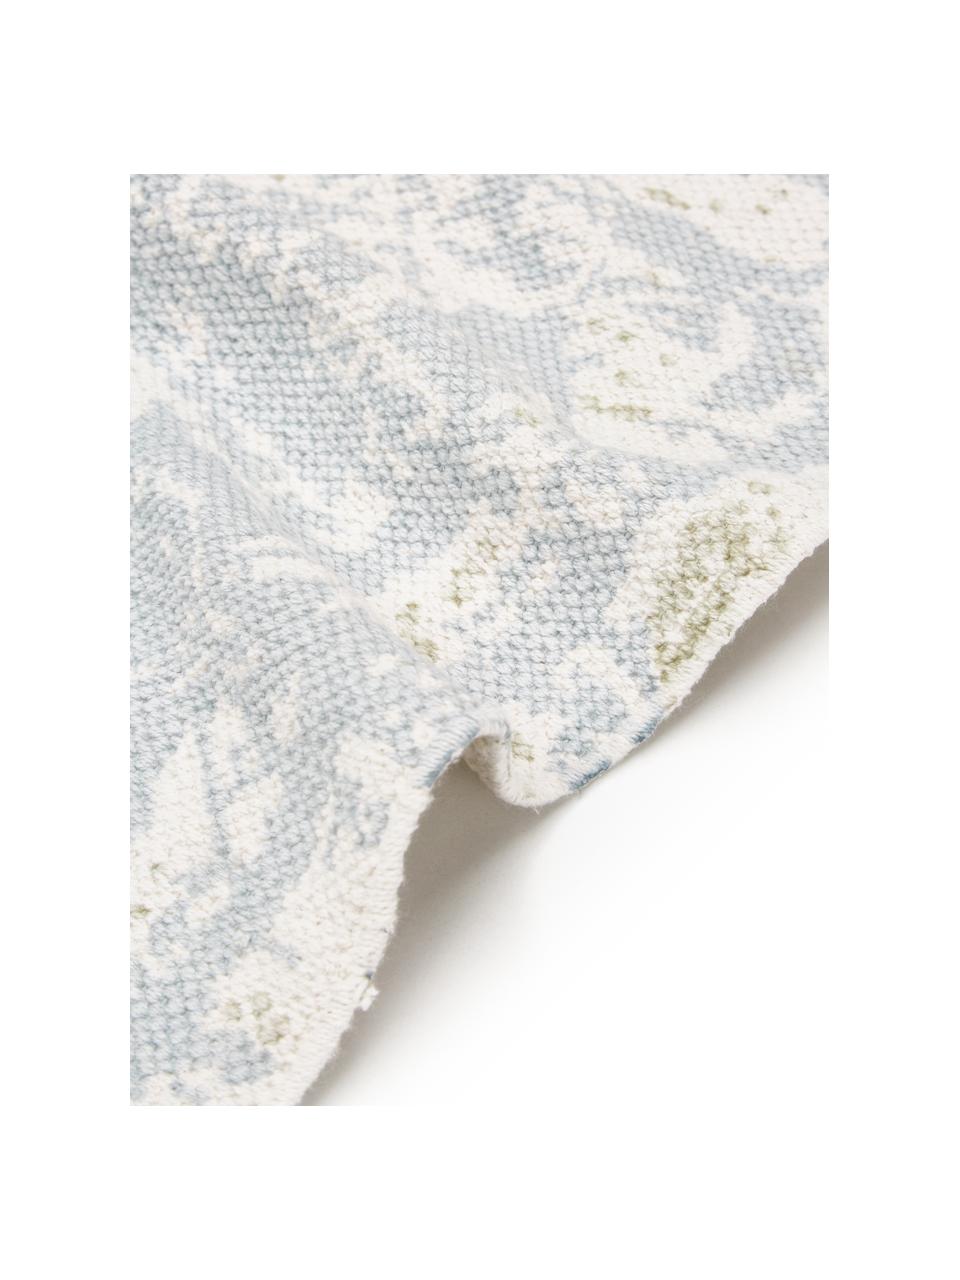 Tapis fin en coton beige-bleu vintage tissé main Jasmine, Tons bleus et blancs, larg. 70 x long. 140 cm (taille XS)